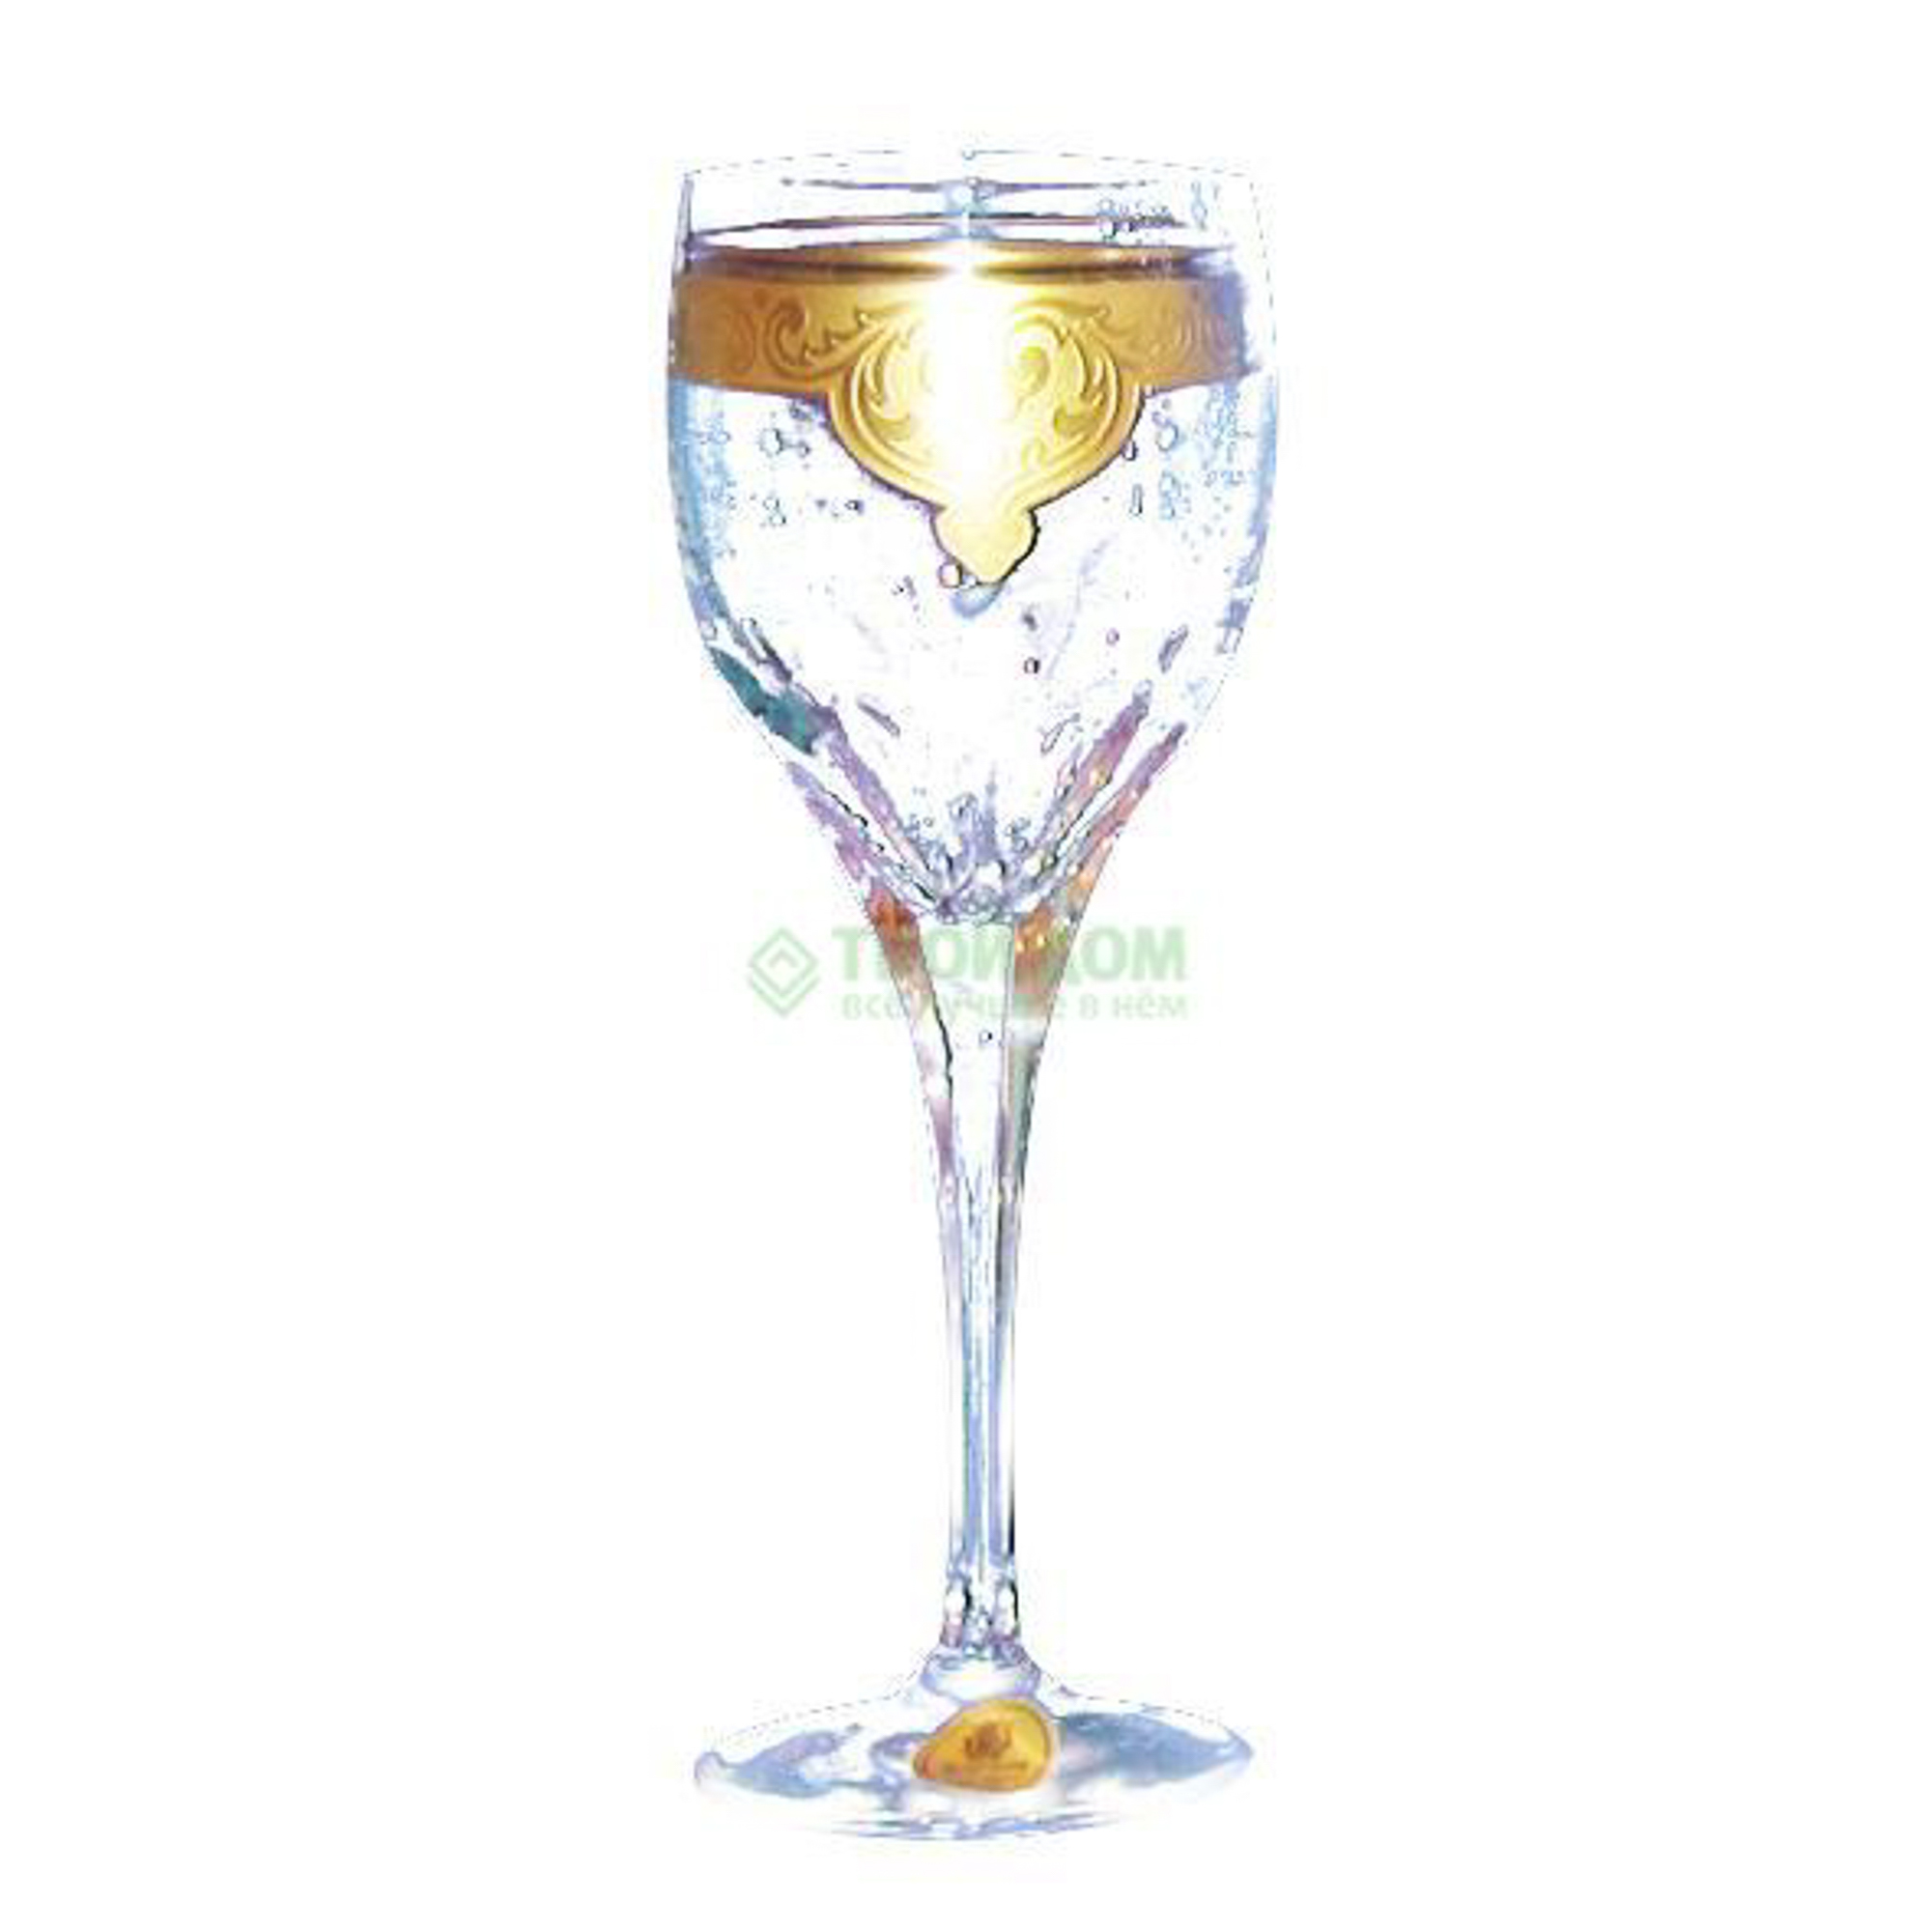 Набор рюмок Arnstadt kristall Sanssouci  для водки 6шт 60мл пл (7092) набор для ликера водки crystal bohemia vinia графин 750 мл и 6 рюмок 80 мл